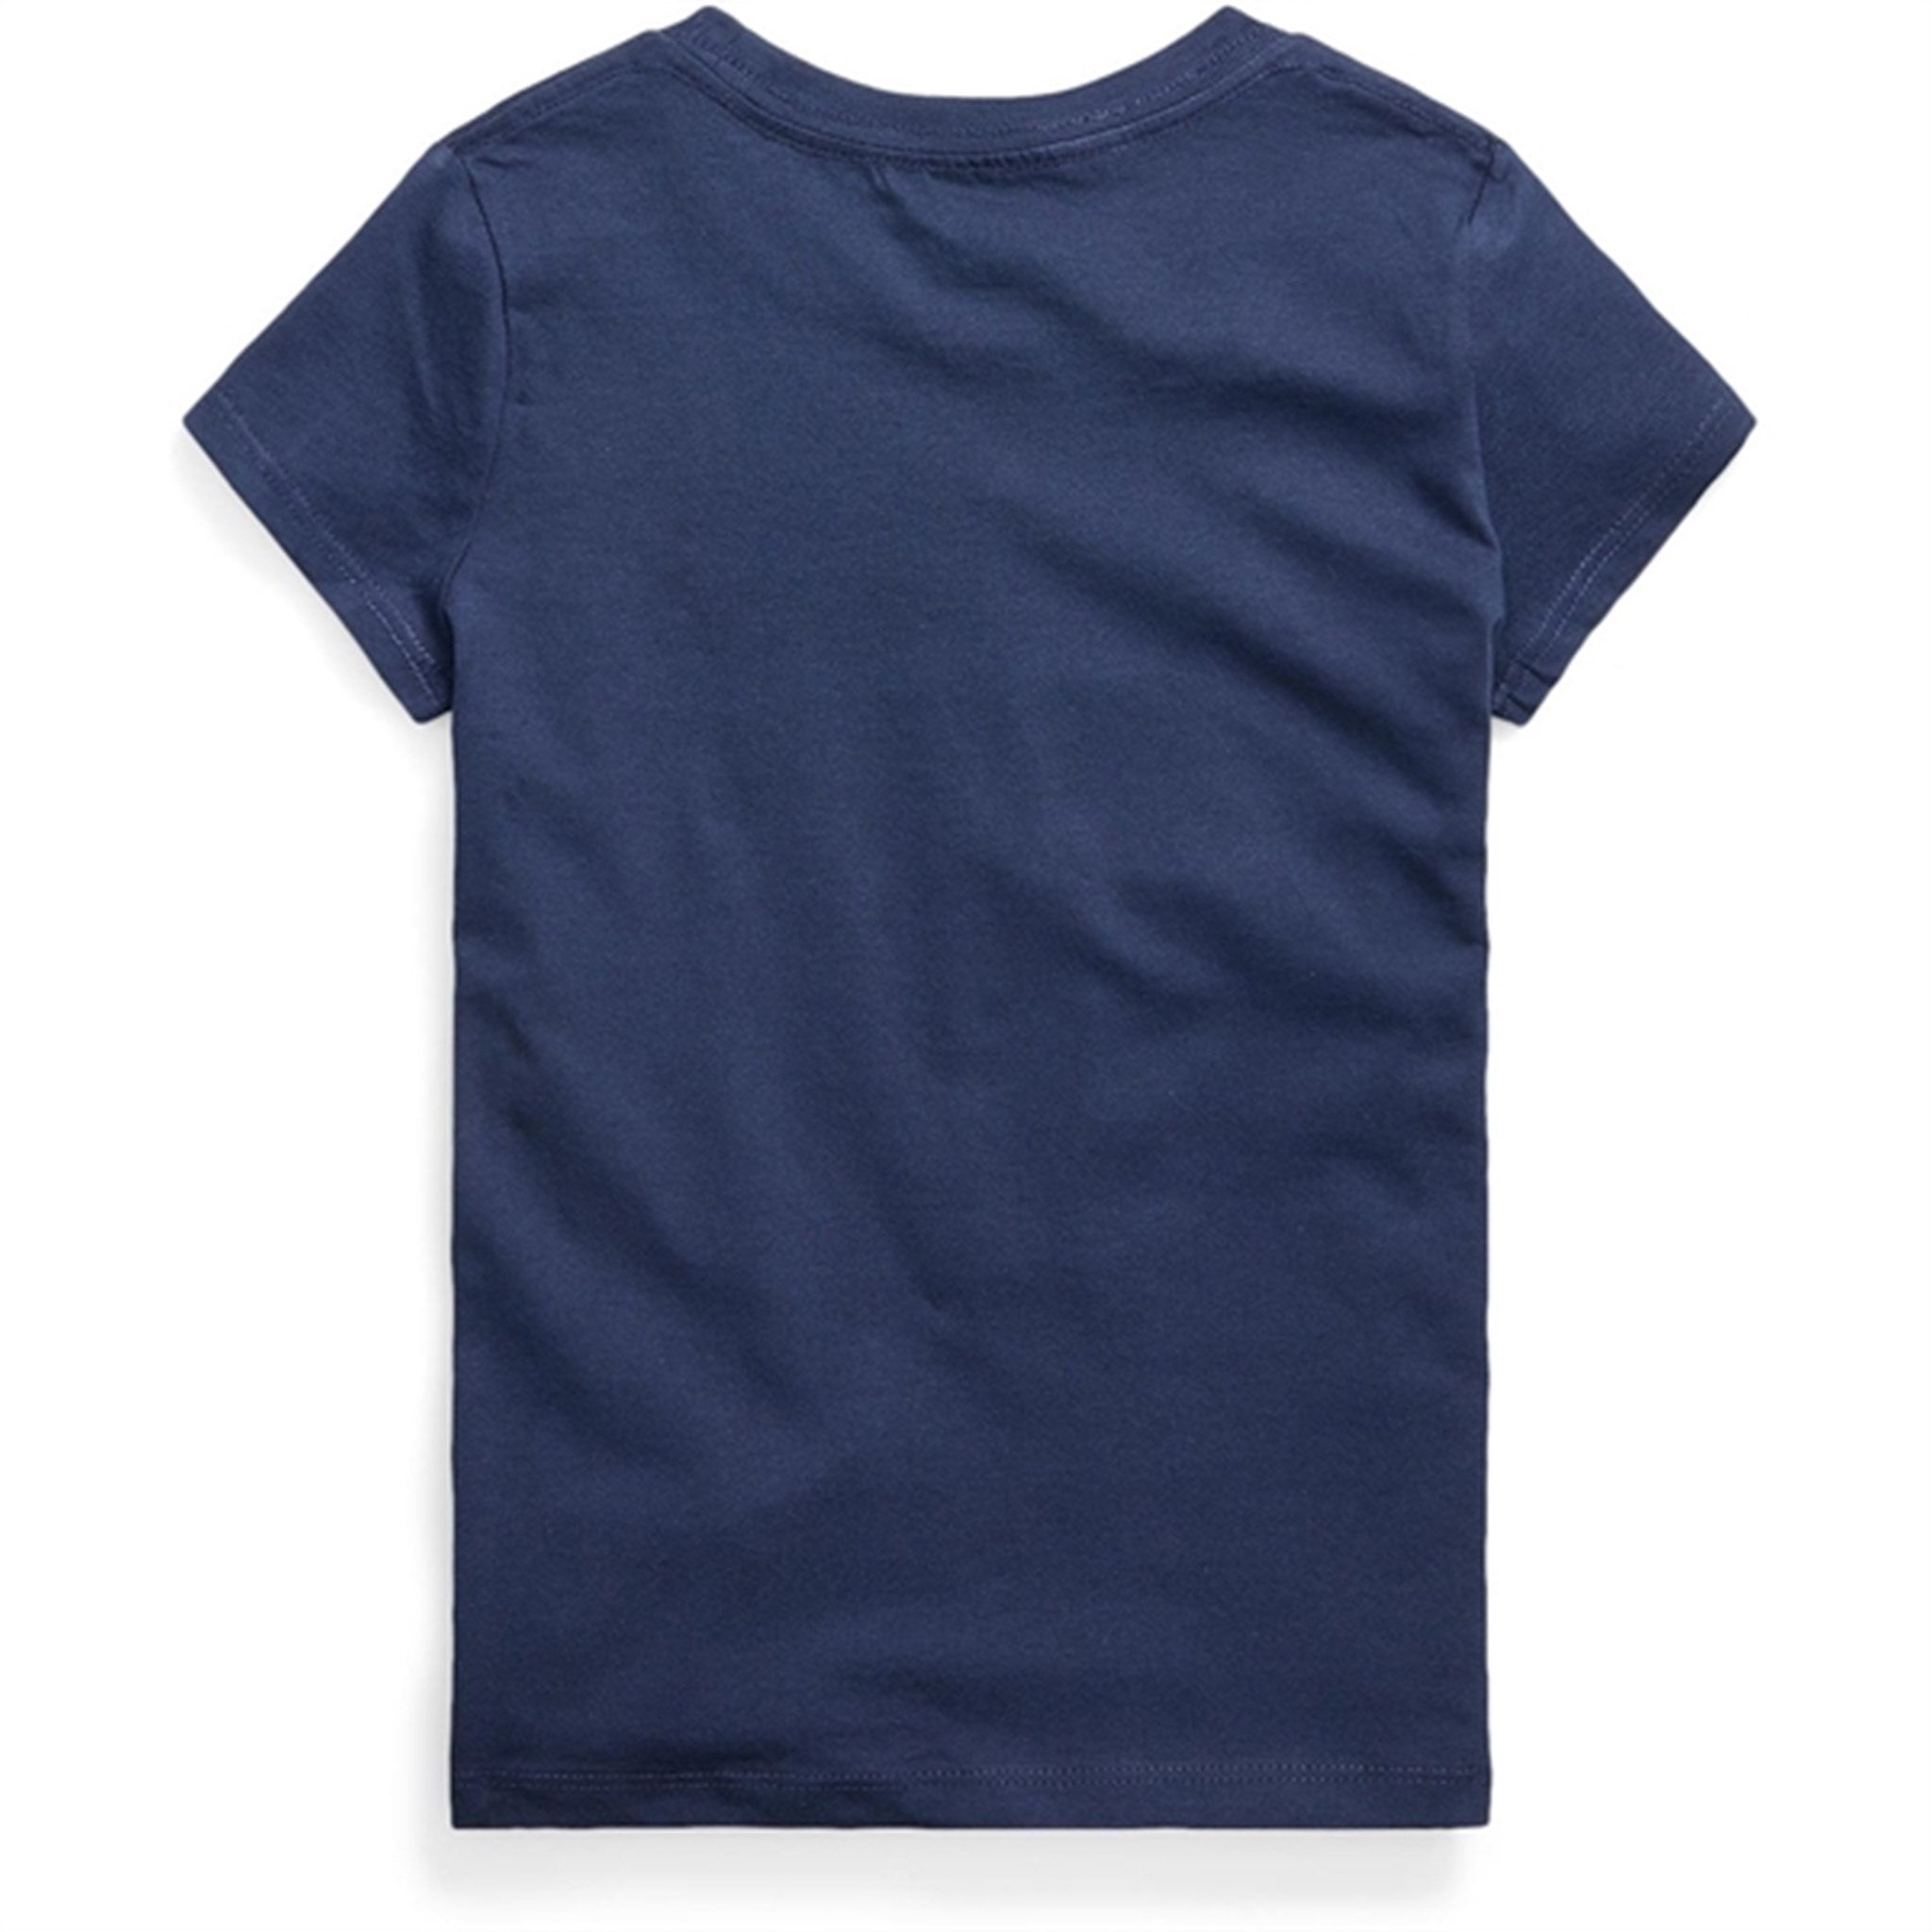 Polo Ralph Lauren Girls T-Shirt Newport Navy 2